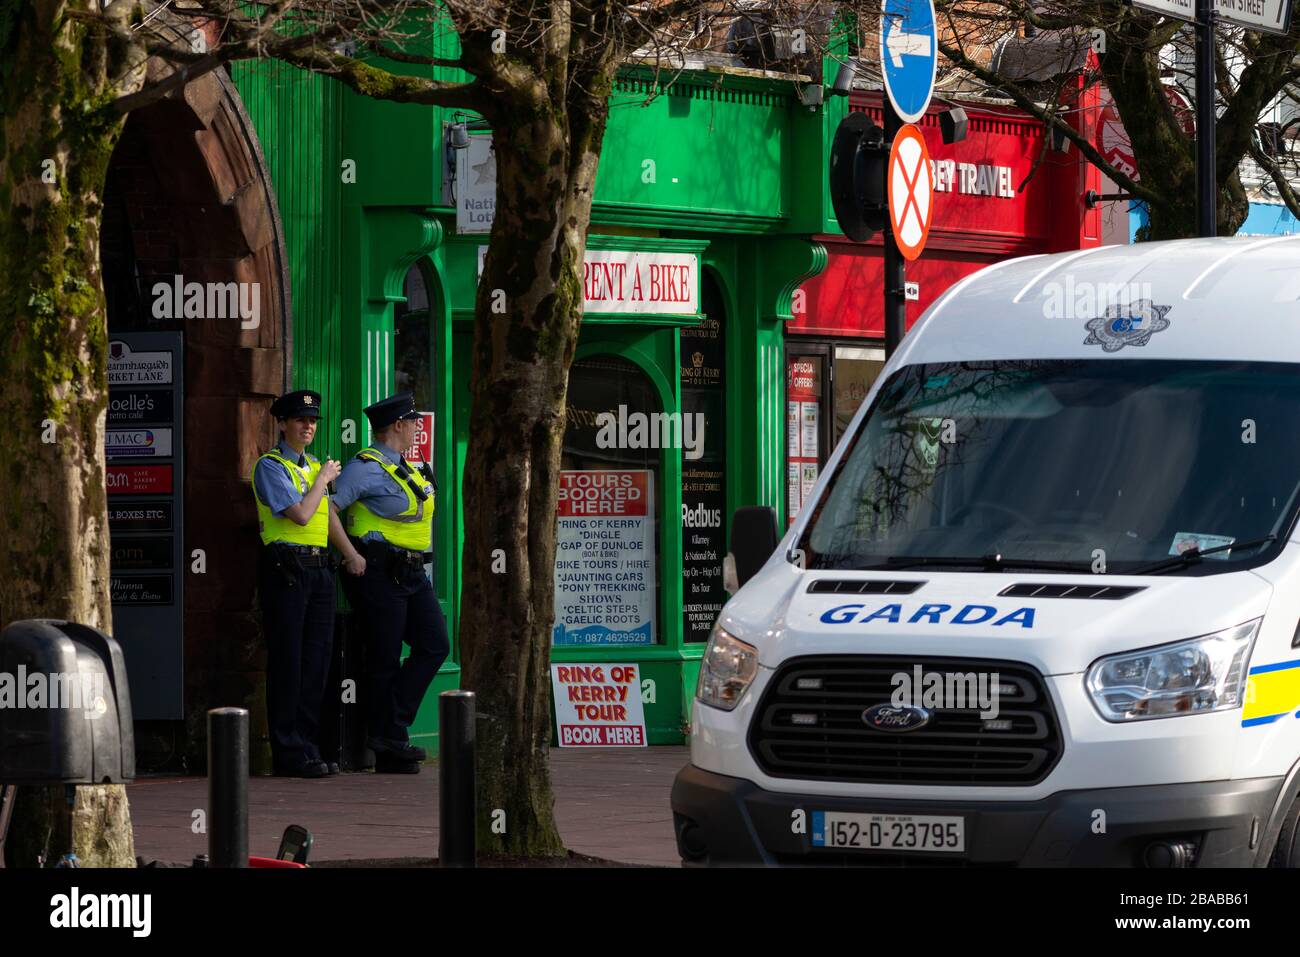 Zwei weibliche Polizisten aus Garda, die entspannt im Dienst im ruhigen Stadtzentrum von Killarney, County Kerry, Irland, waren Stockfoto